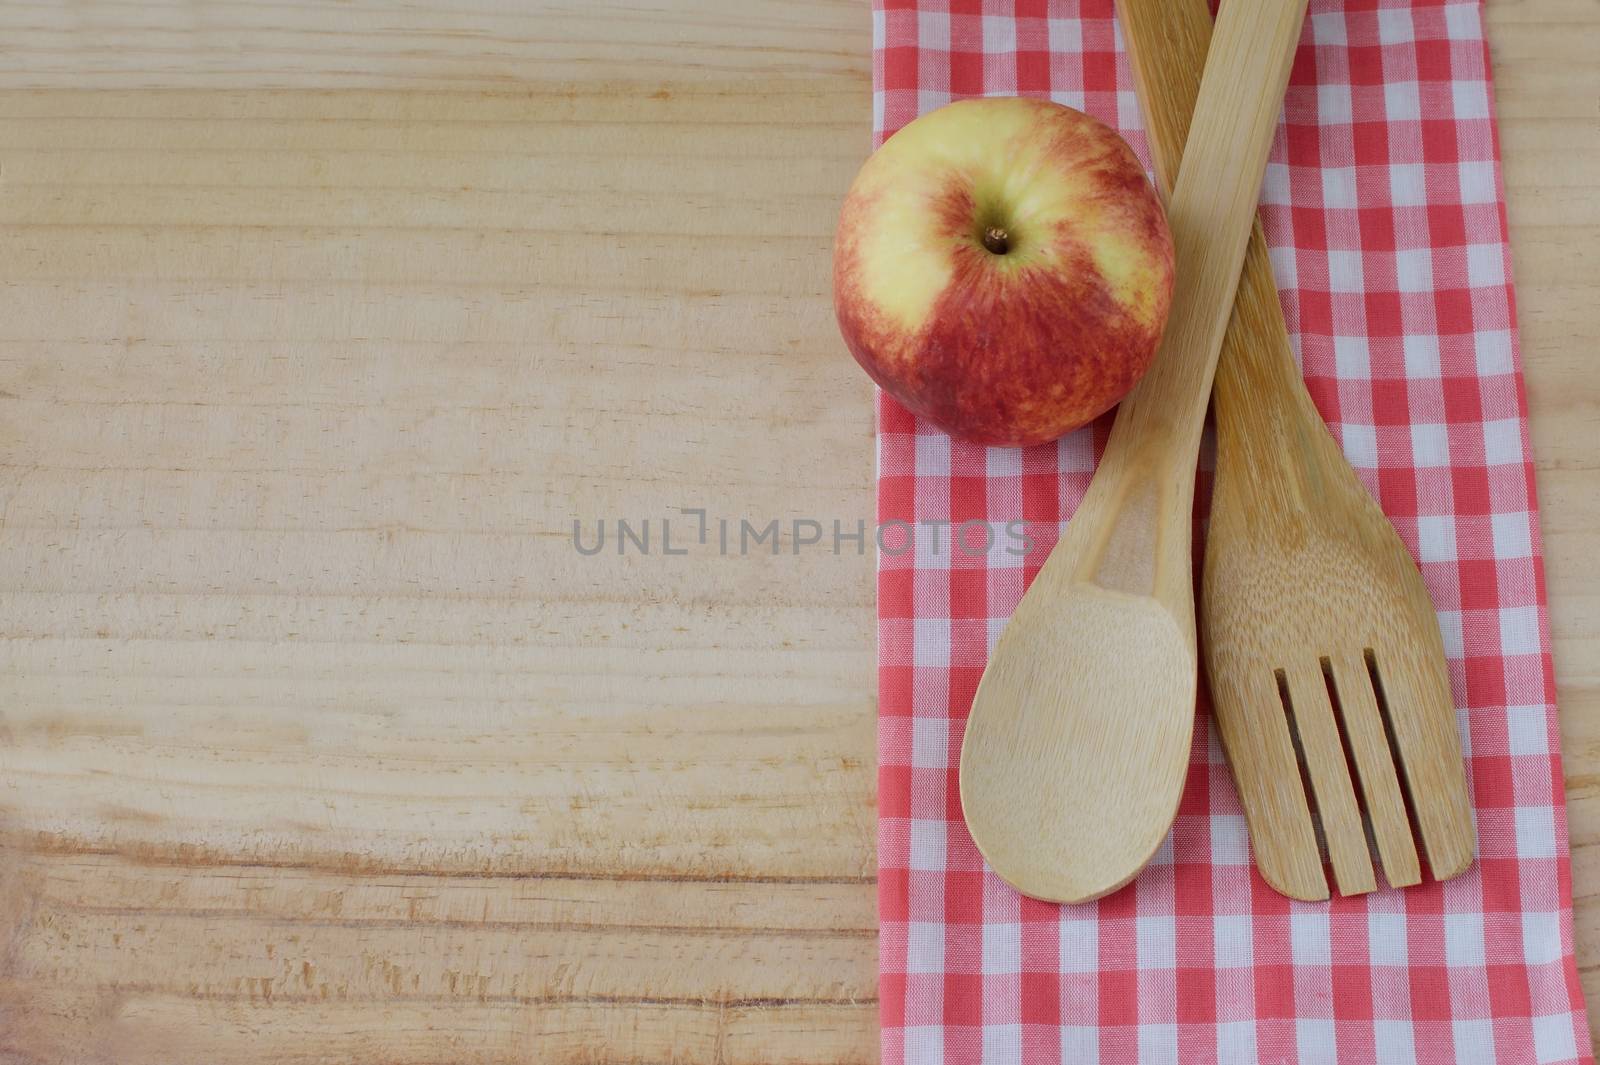 Wooden kitchen utensils on wooden background by Kheat